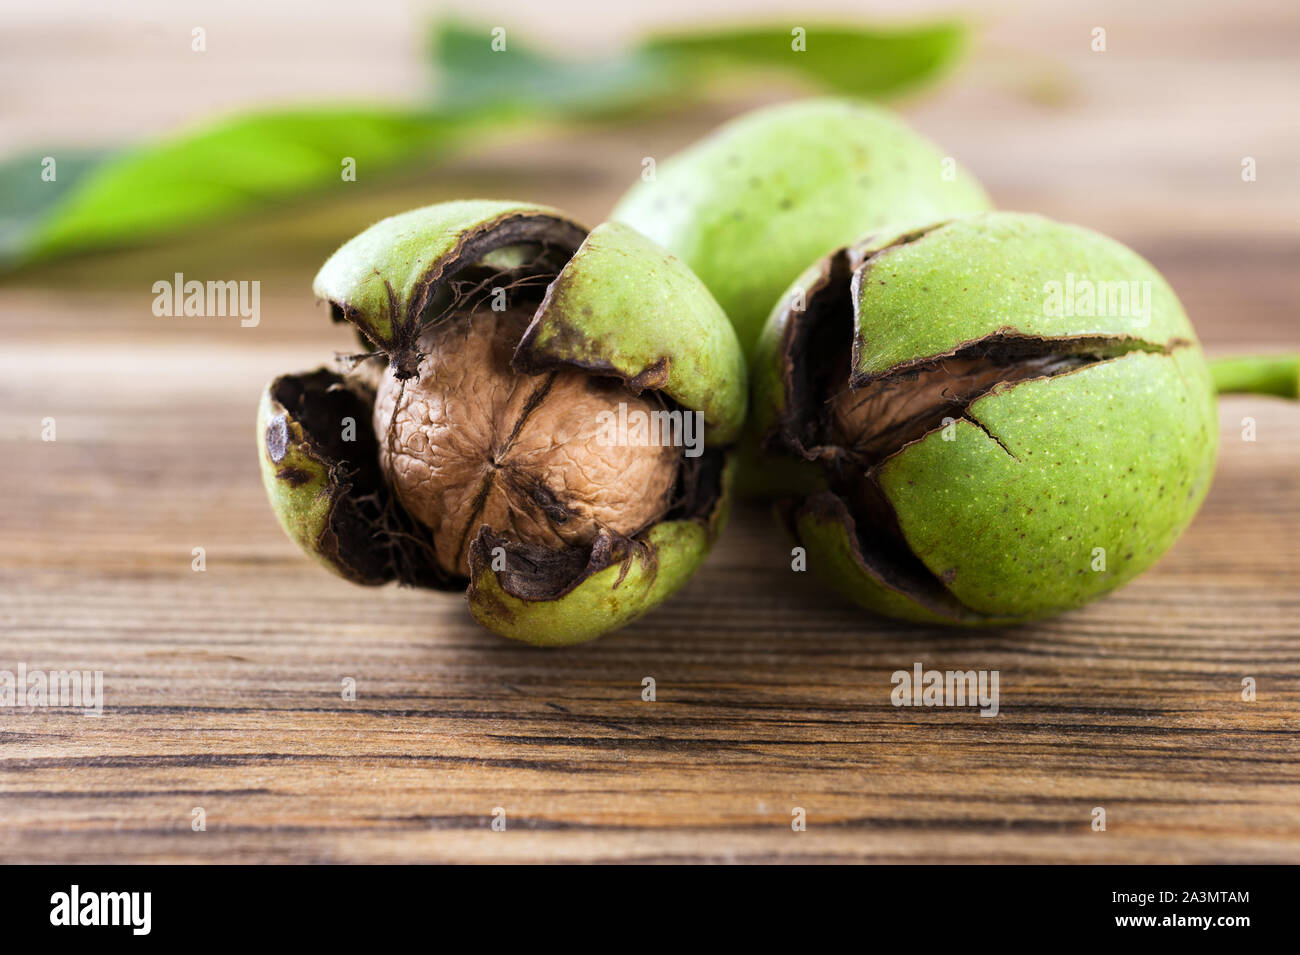 Trois noix brutes mûrs avec carapace verte sur la table en bois de l'automne les noix..Selective focus.orientation horizontale. Banque D'Images